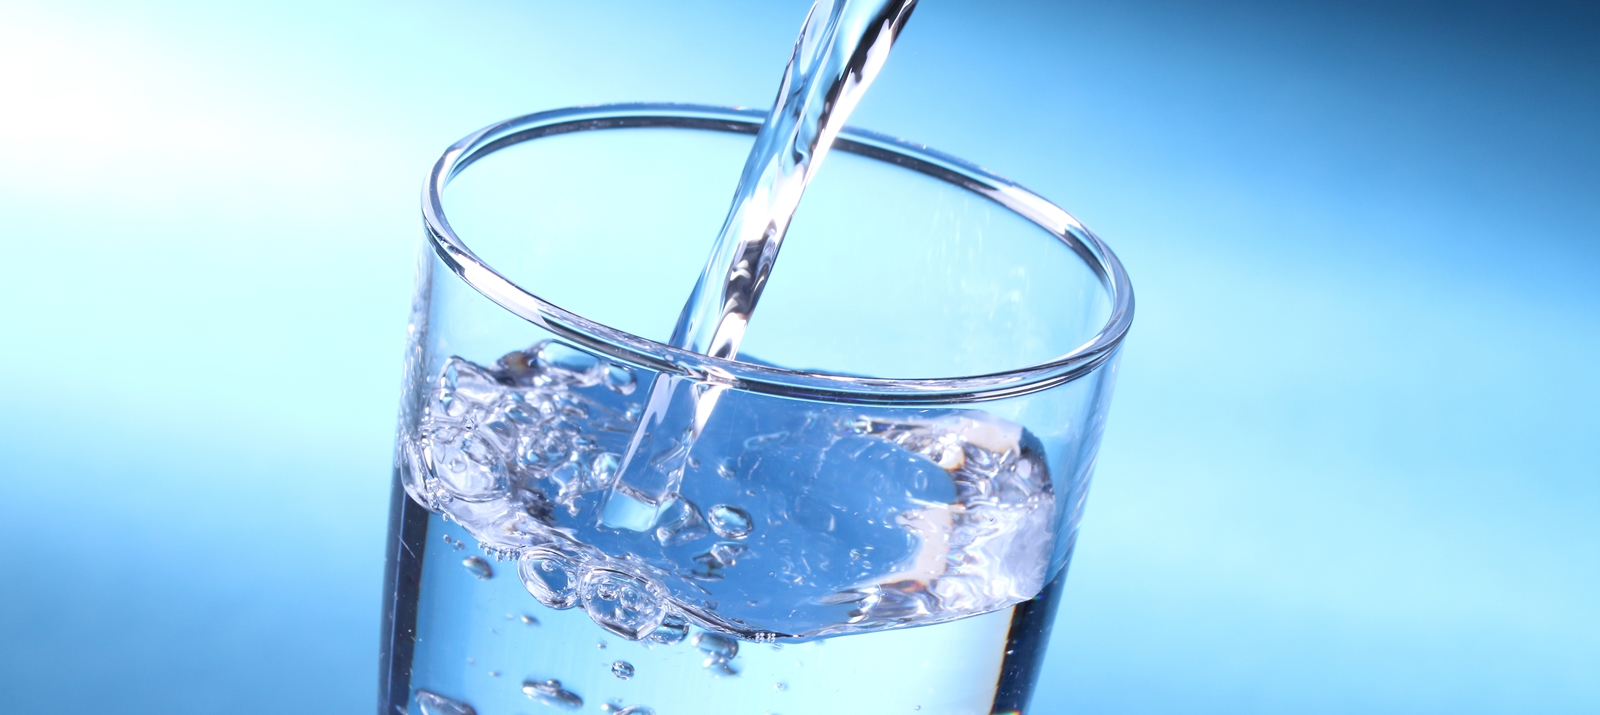 Вода является напитком. Питьевая вода. Стакан воды. Минеральная вода в стакане. Вода и питьевой режим.